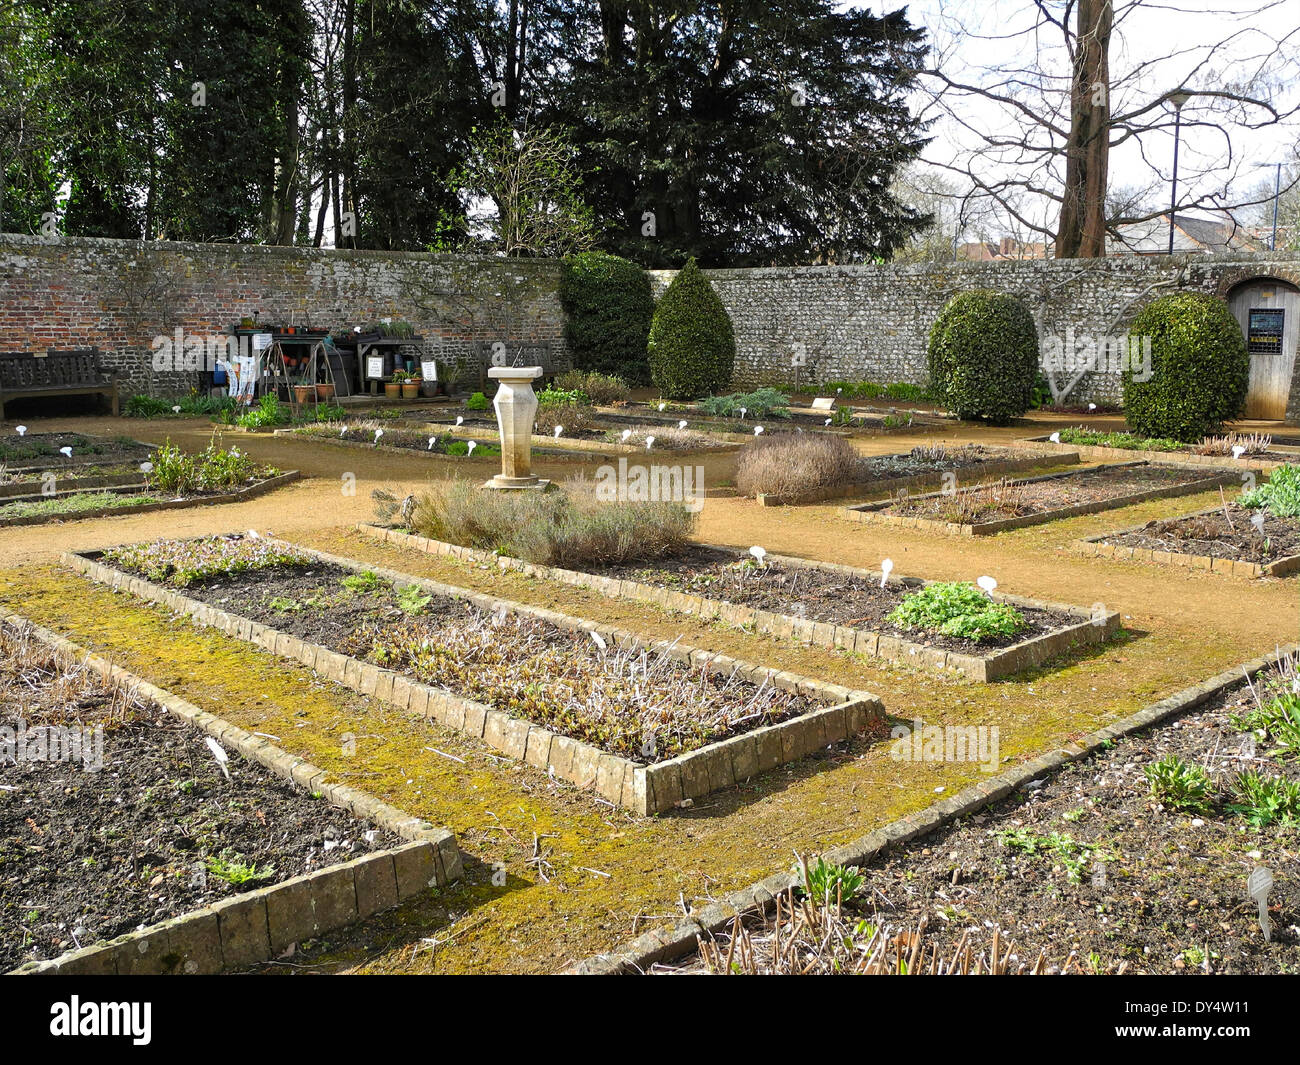 Petersfield Physic Gardens Garden in Petersfield, Hampshire enthält eine große Sammlung von kulinarischen und medizinischen Kräutern und Pflanzen. Stockfoto